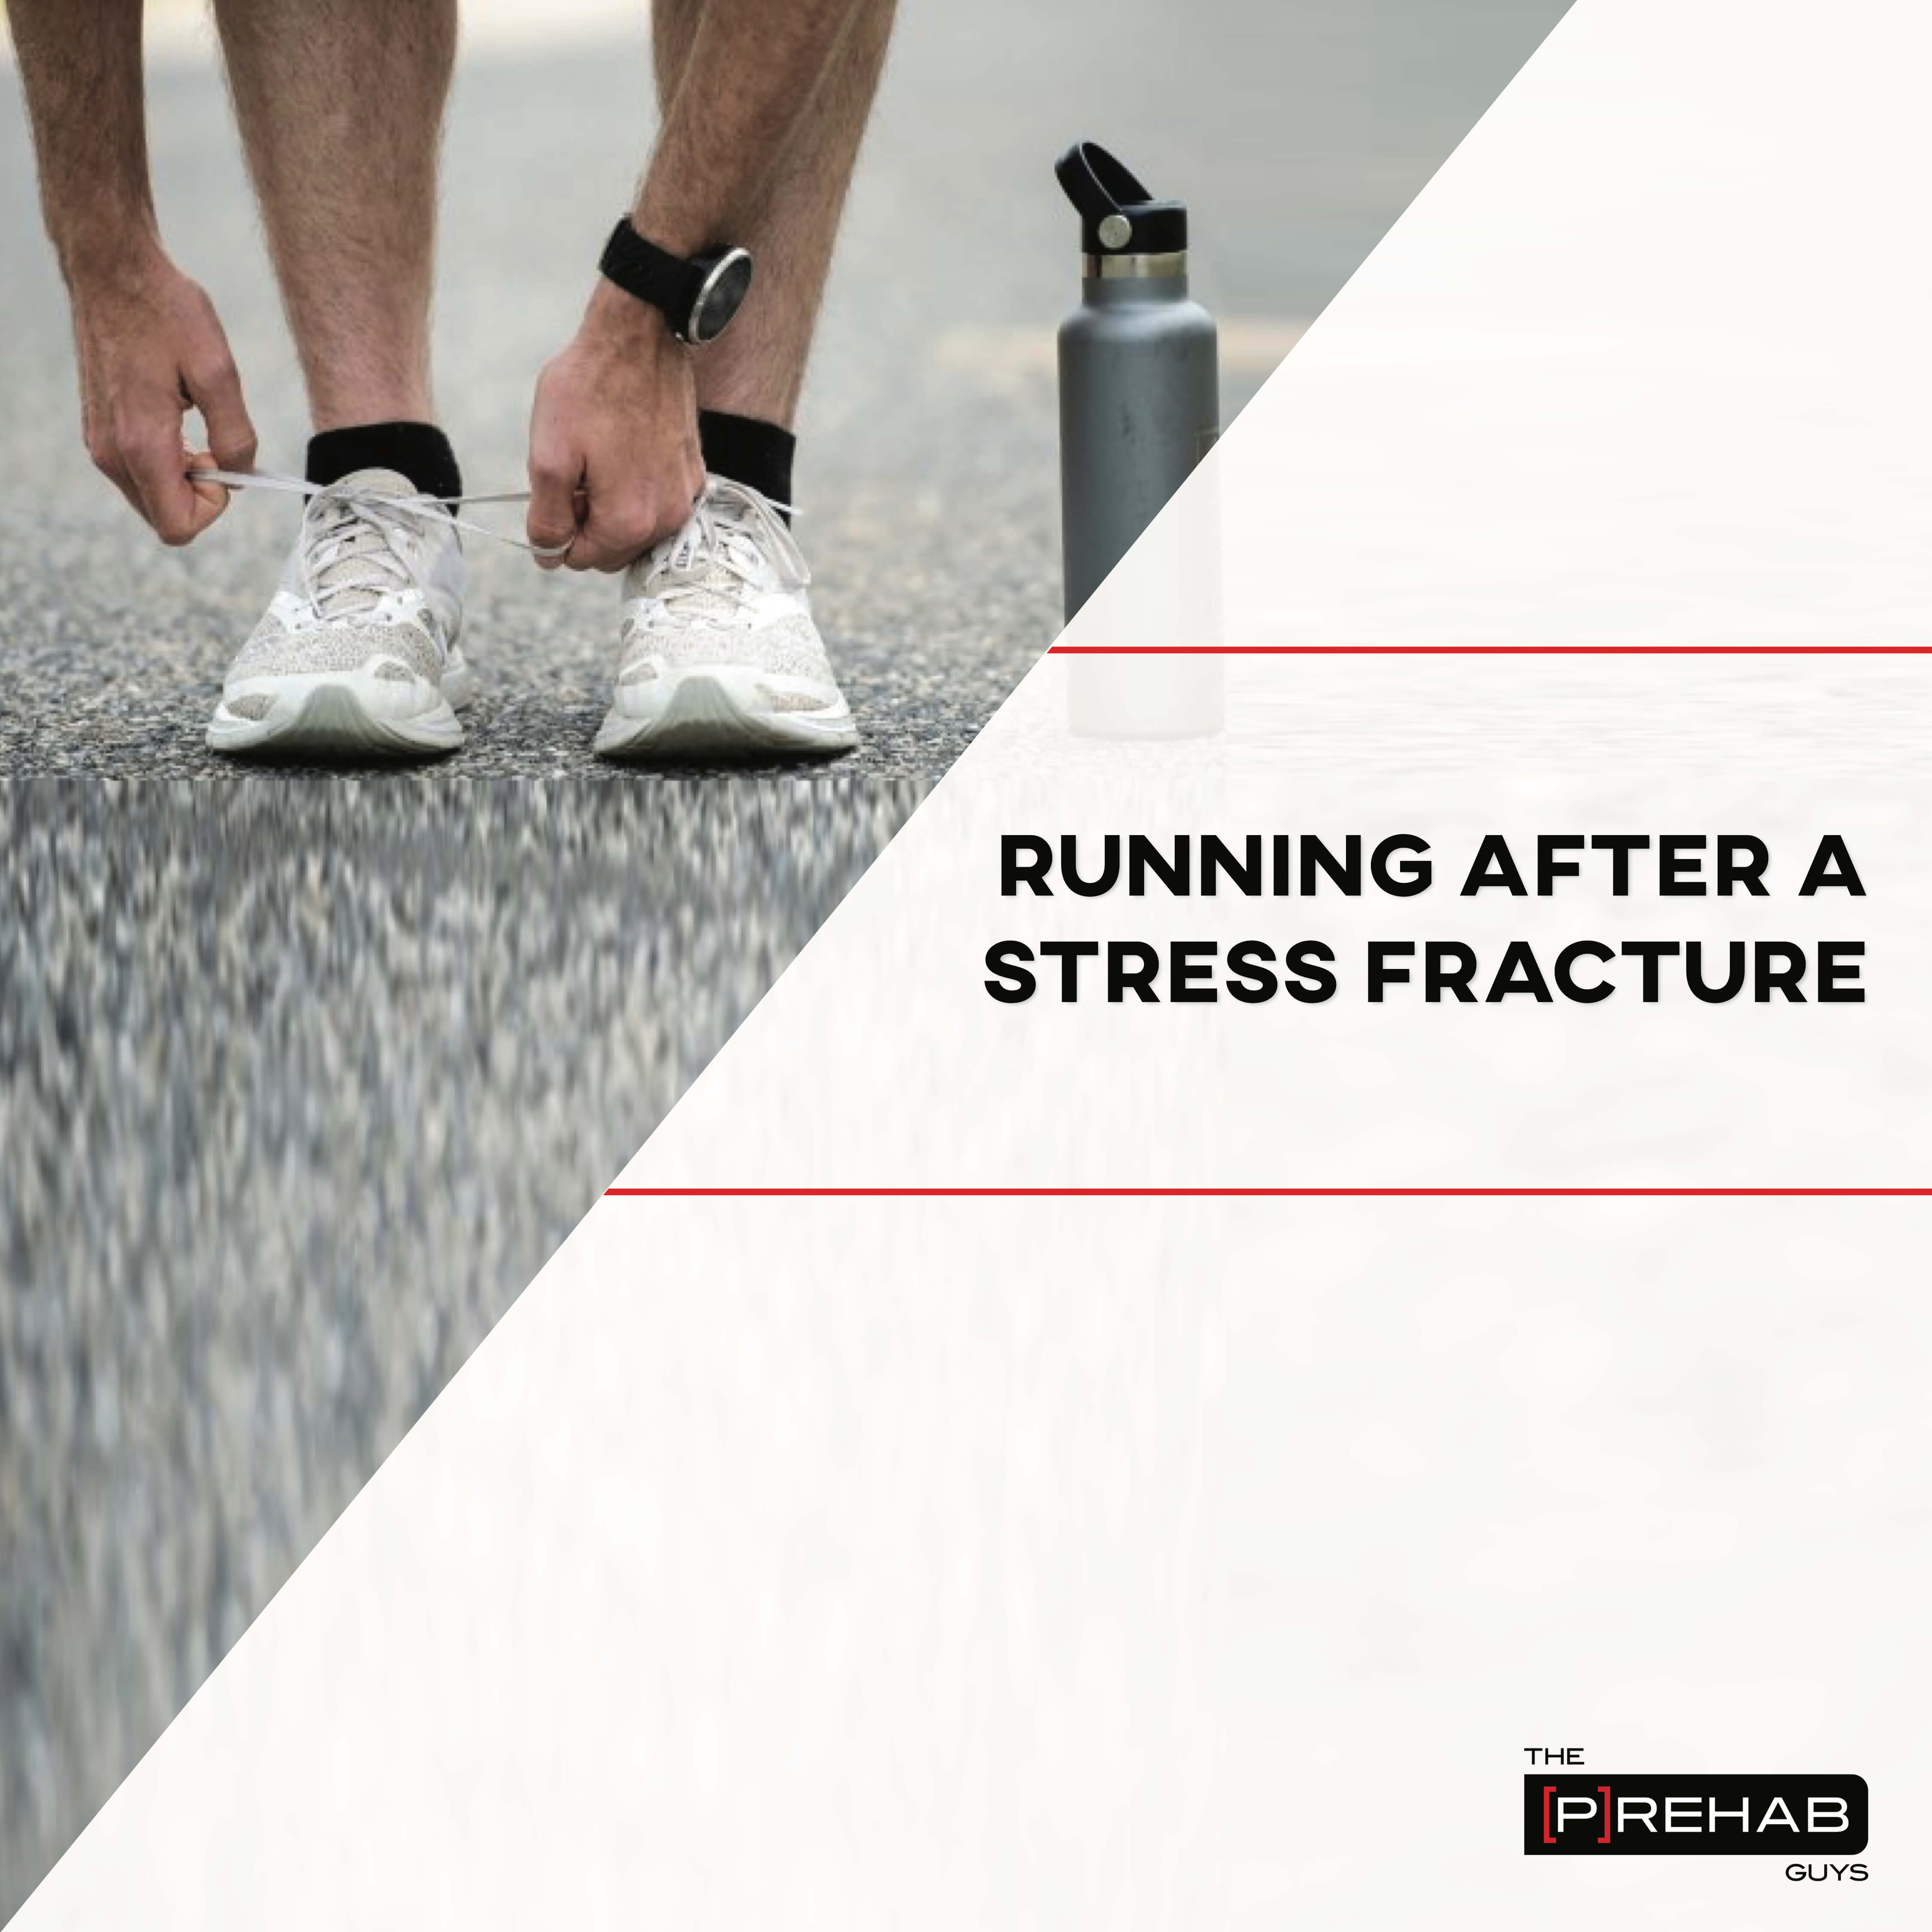 running stress fracture fix flat feet prehab guys